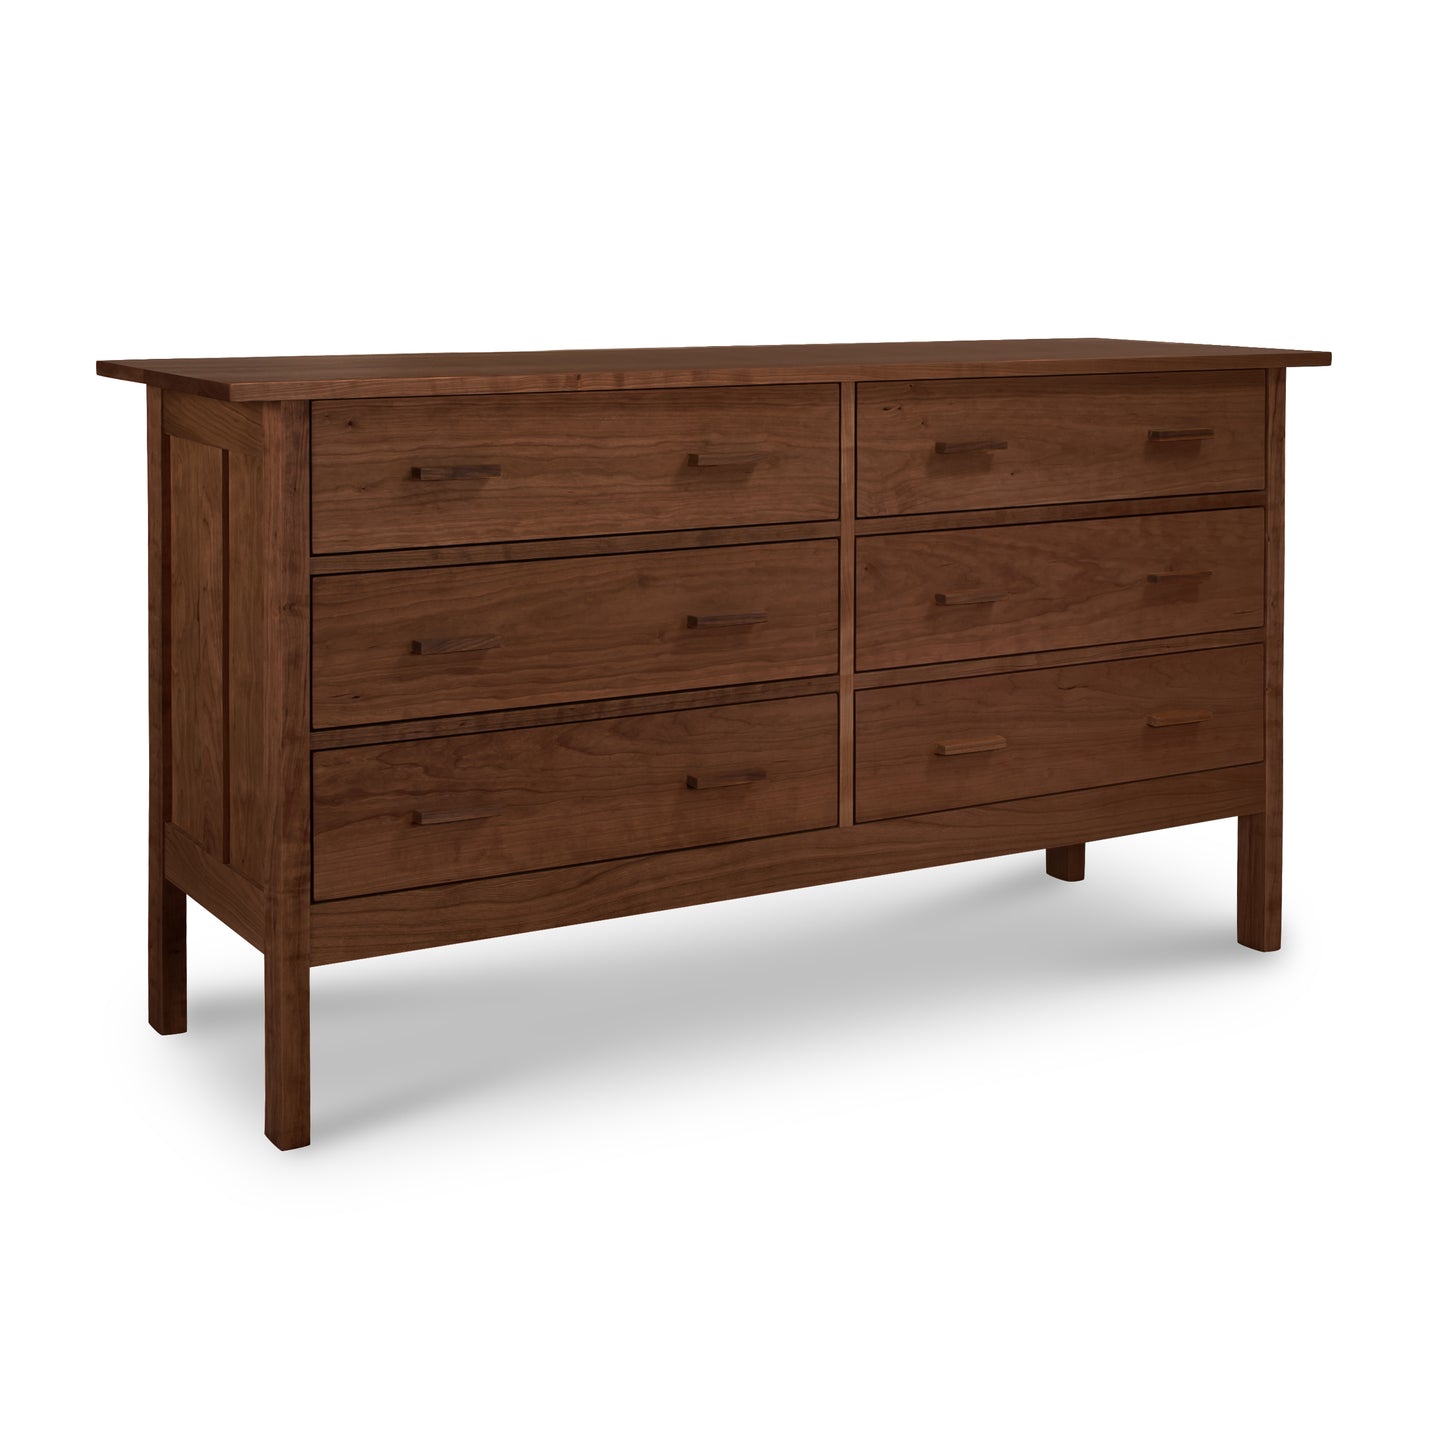 A Vermont Furniture Designs Modern Craftsman 6-Drawer Dresser on a blank background.